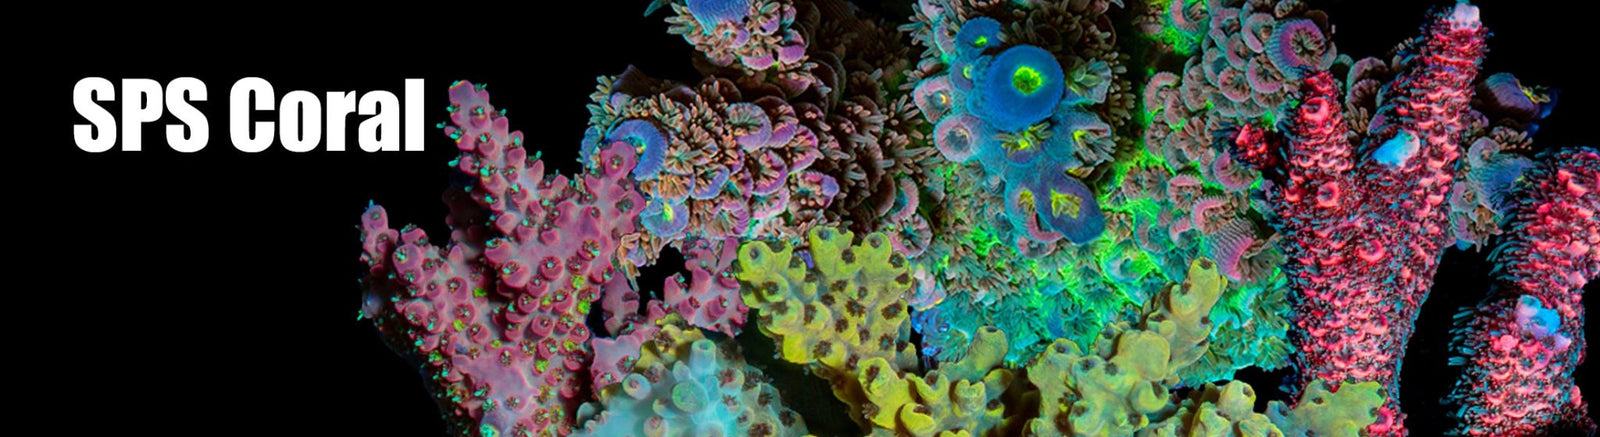 SPS Corals - riptide aquaculture llc